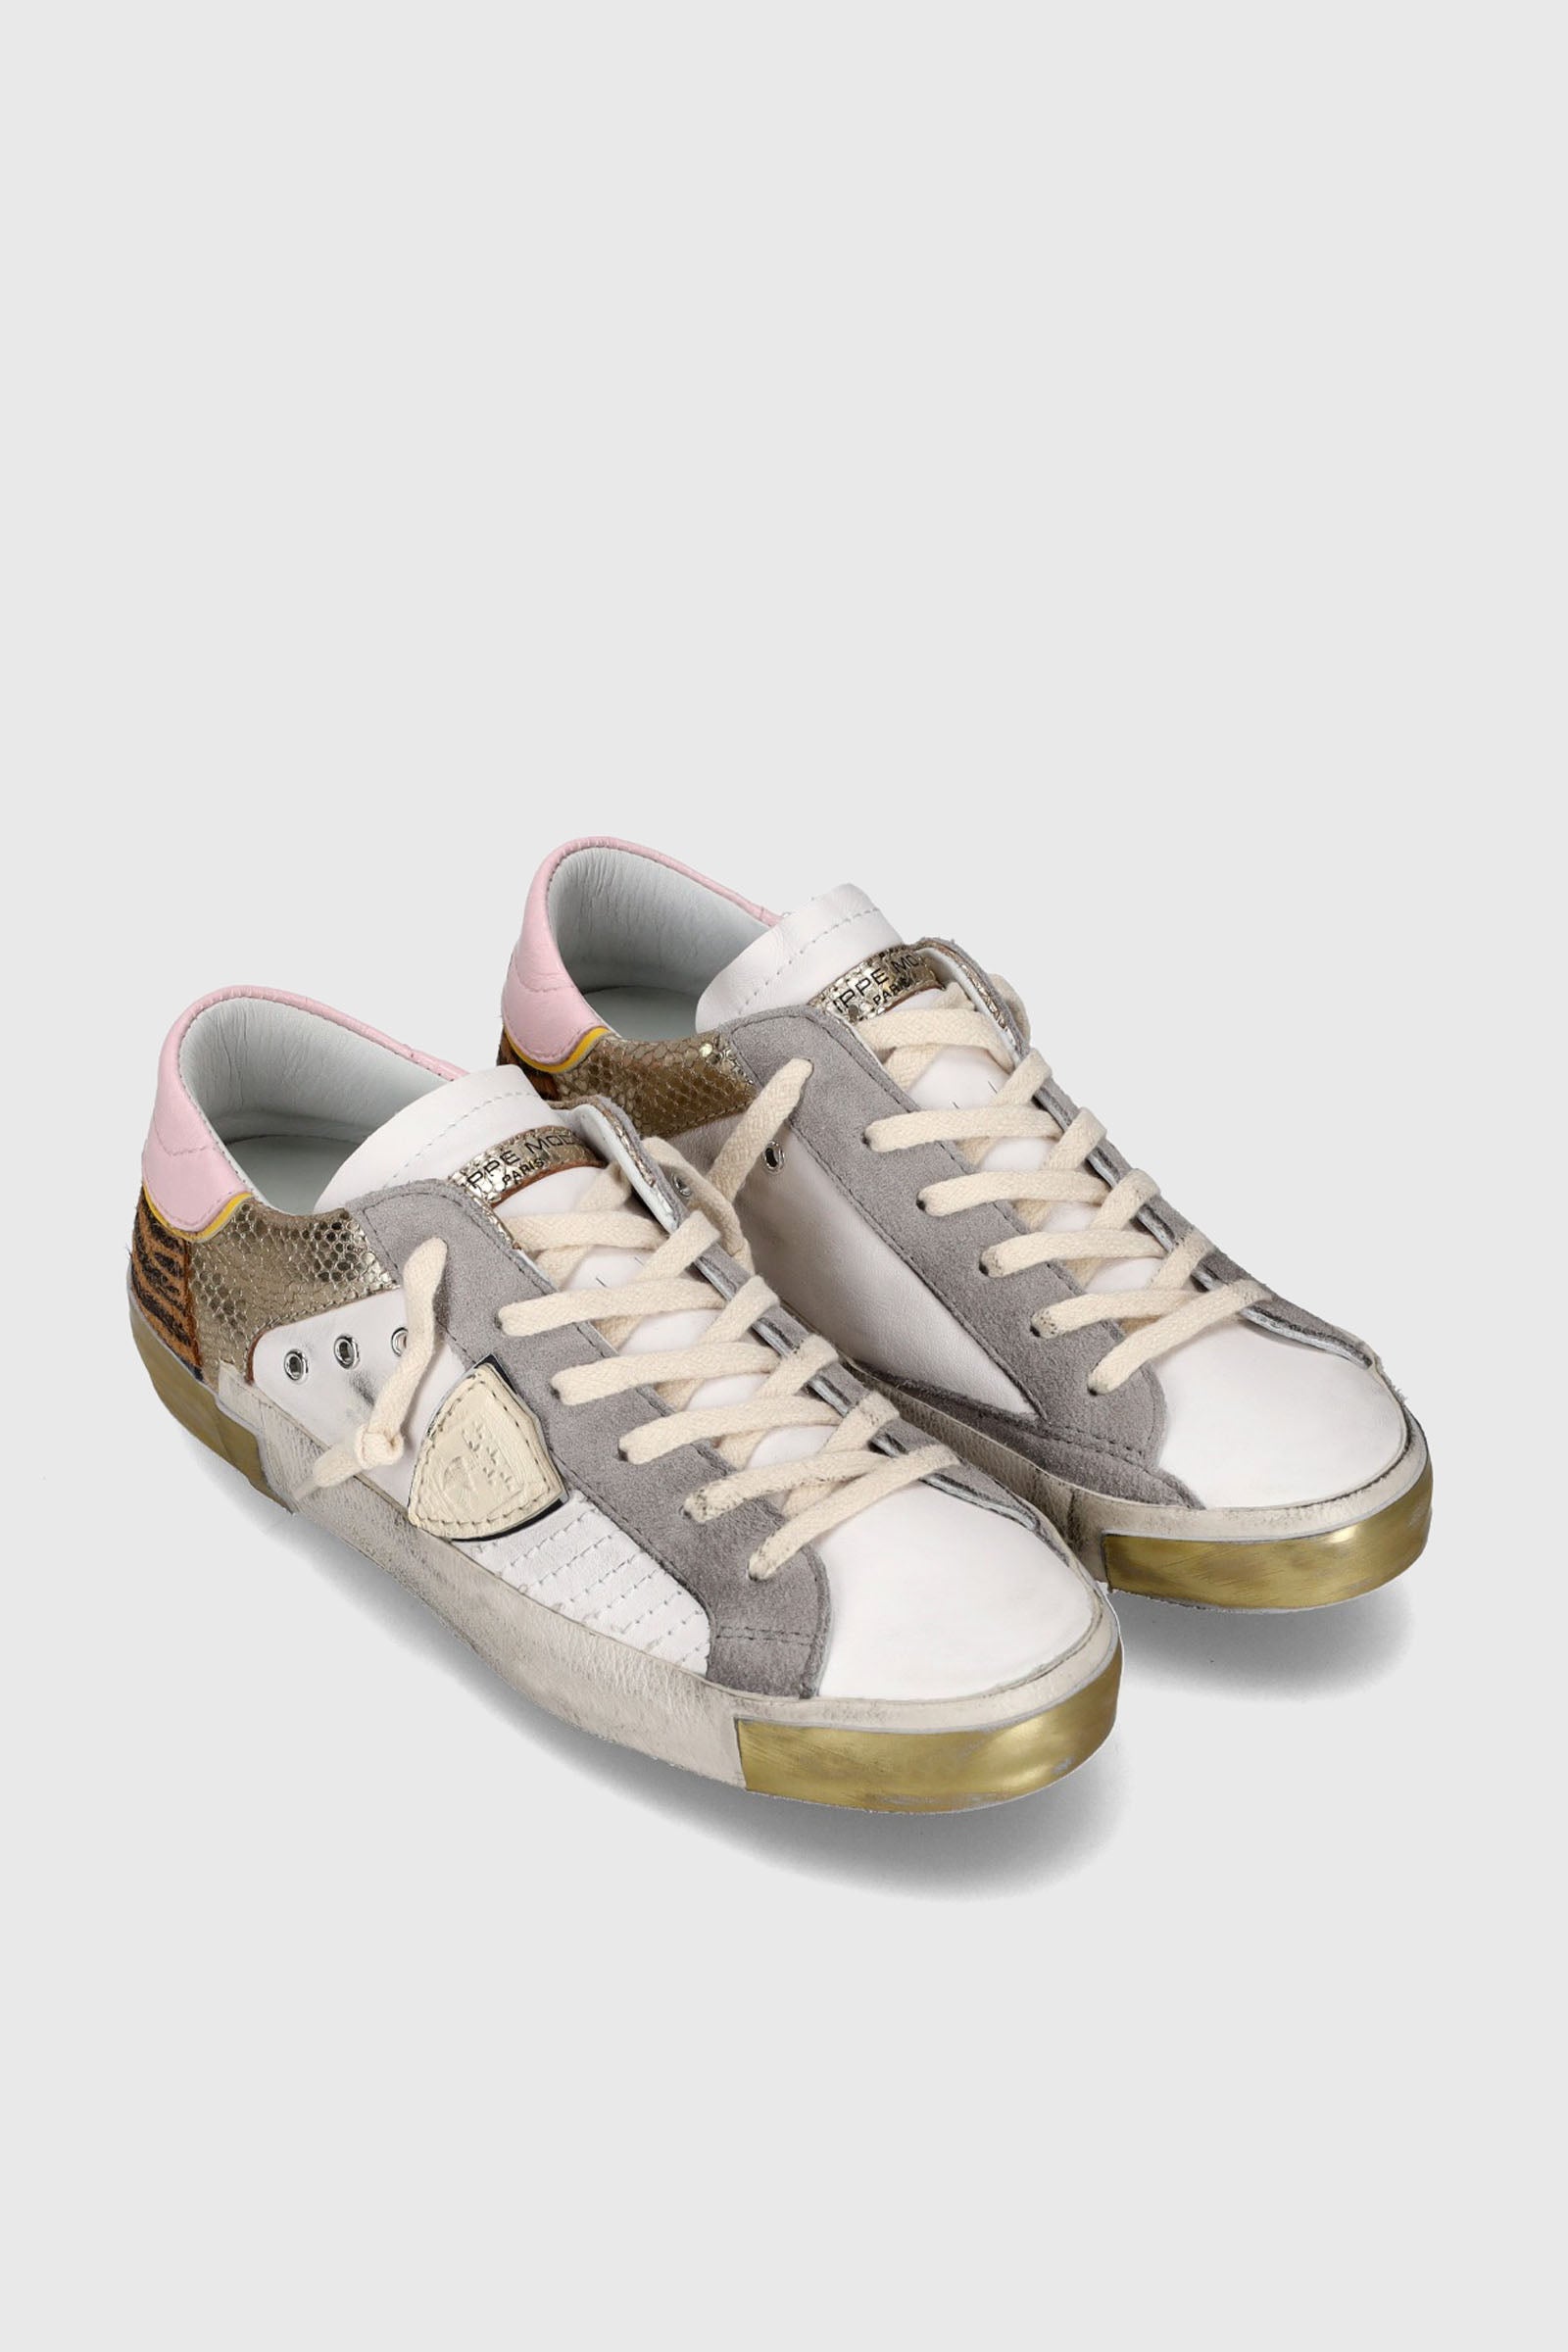 Philippe Model Sneaker PRSX Mixage in Pelle Bianco/Oro - 2